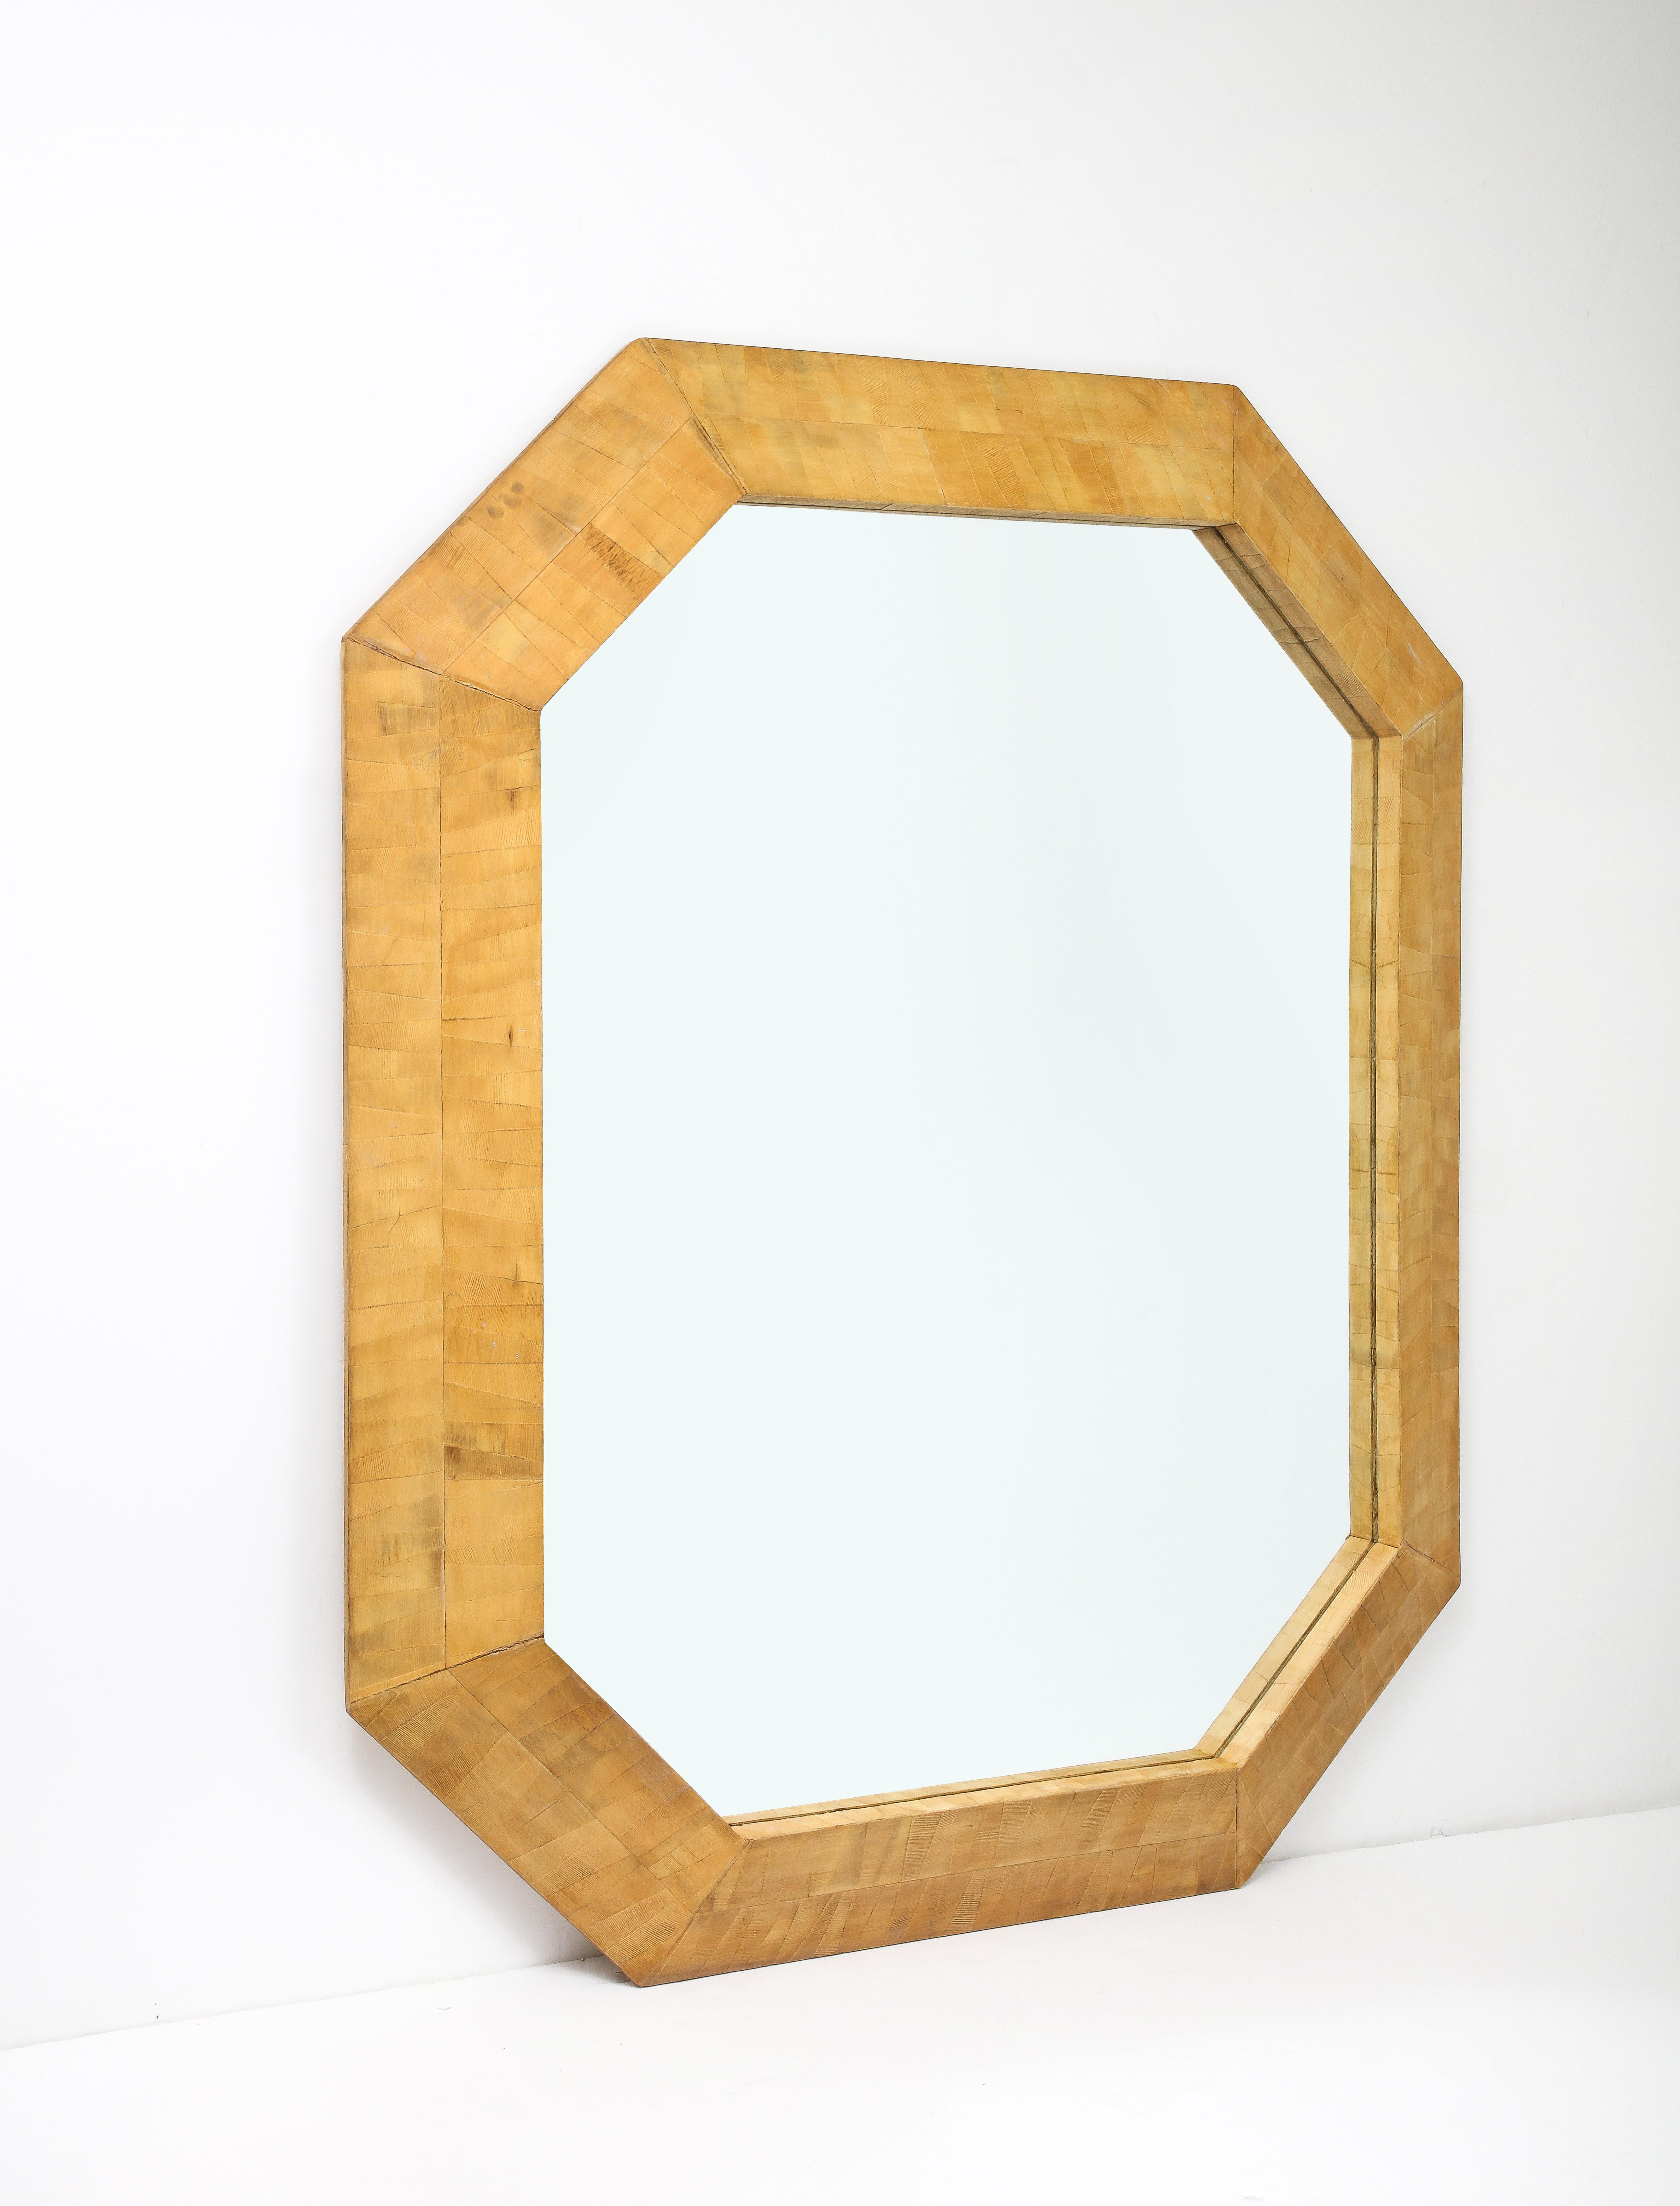 Miroir monumental encadré en parqueterie de bois avec une belle patine naturelle miel vieillie.
Le miroir peut être suspendu horizontalement ou verticalement.